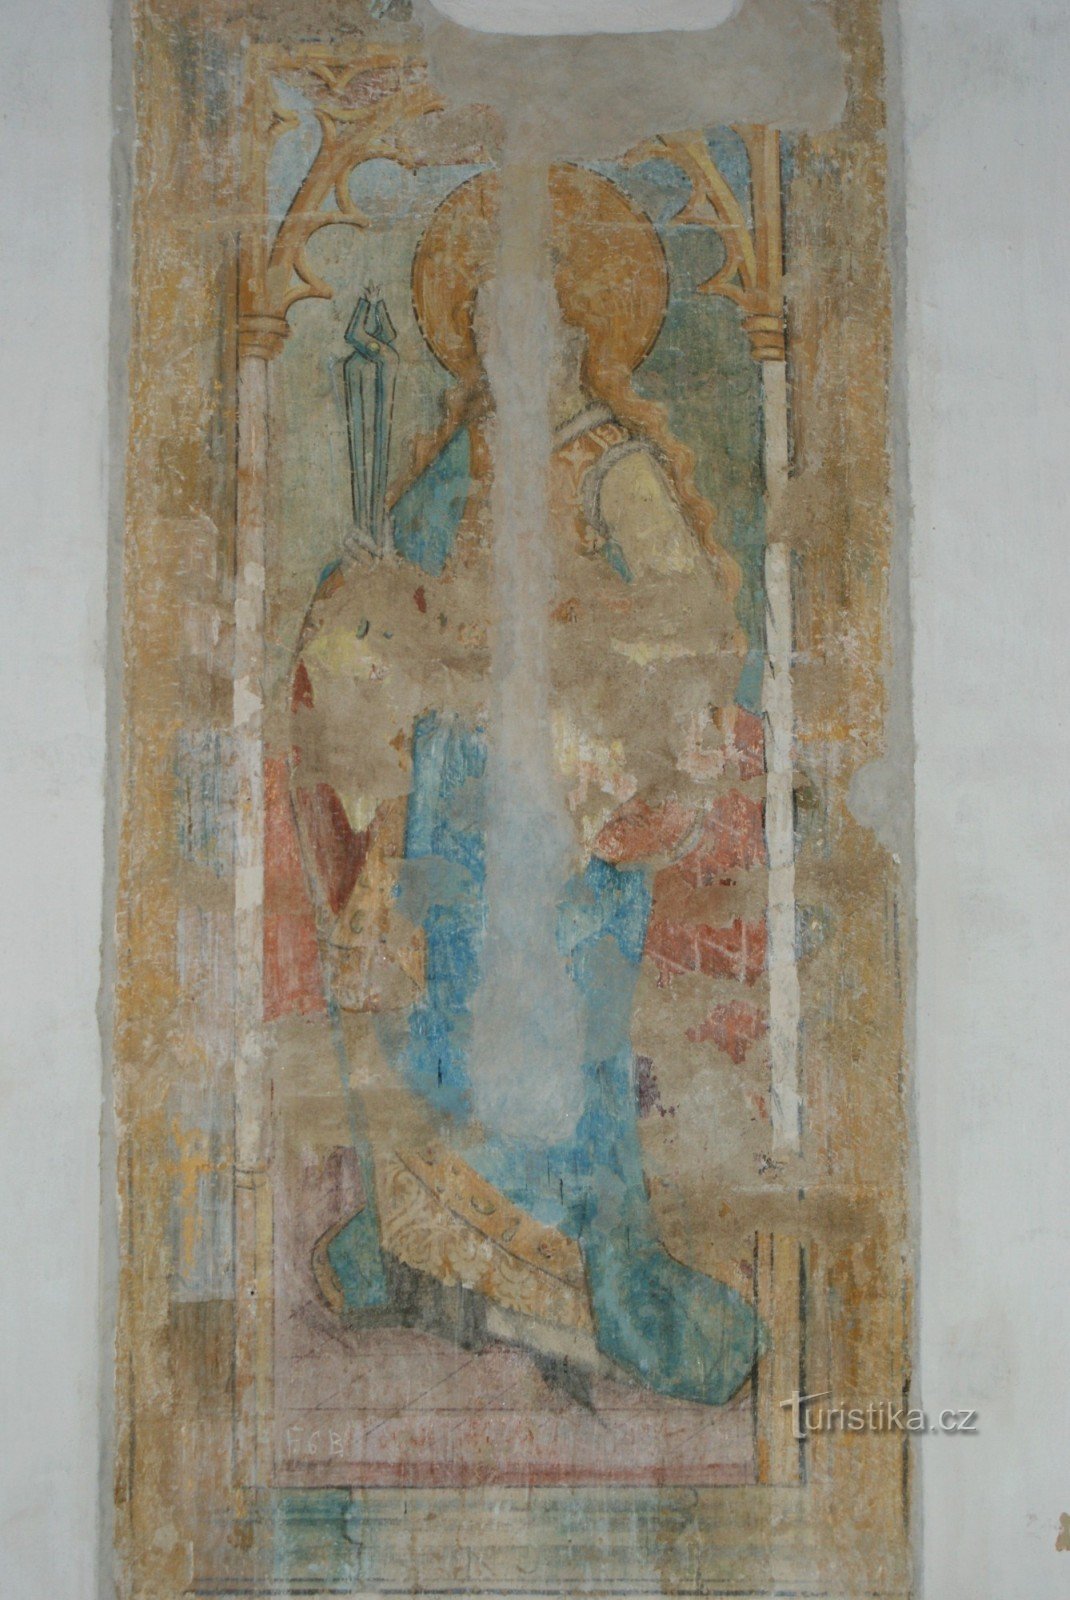 Gotische schilderingen uit de 14e eeuw.